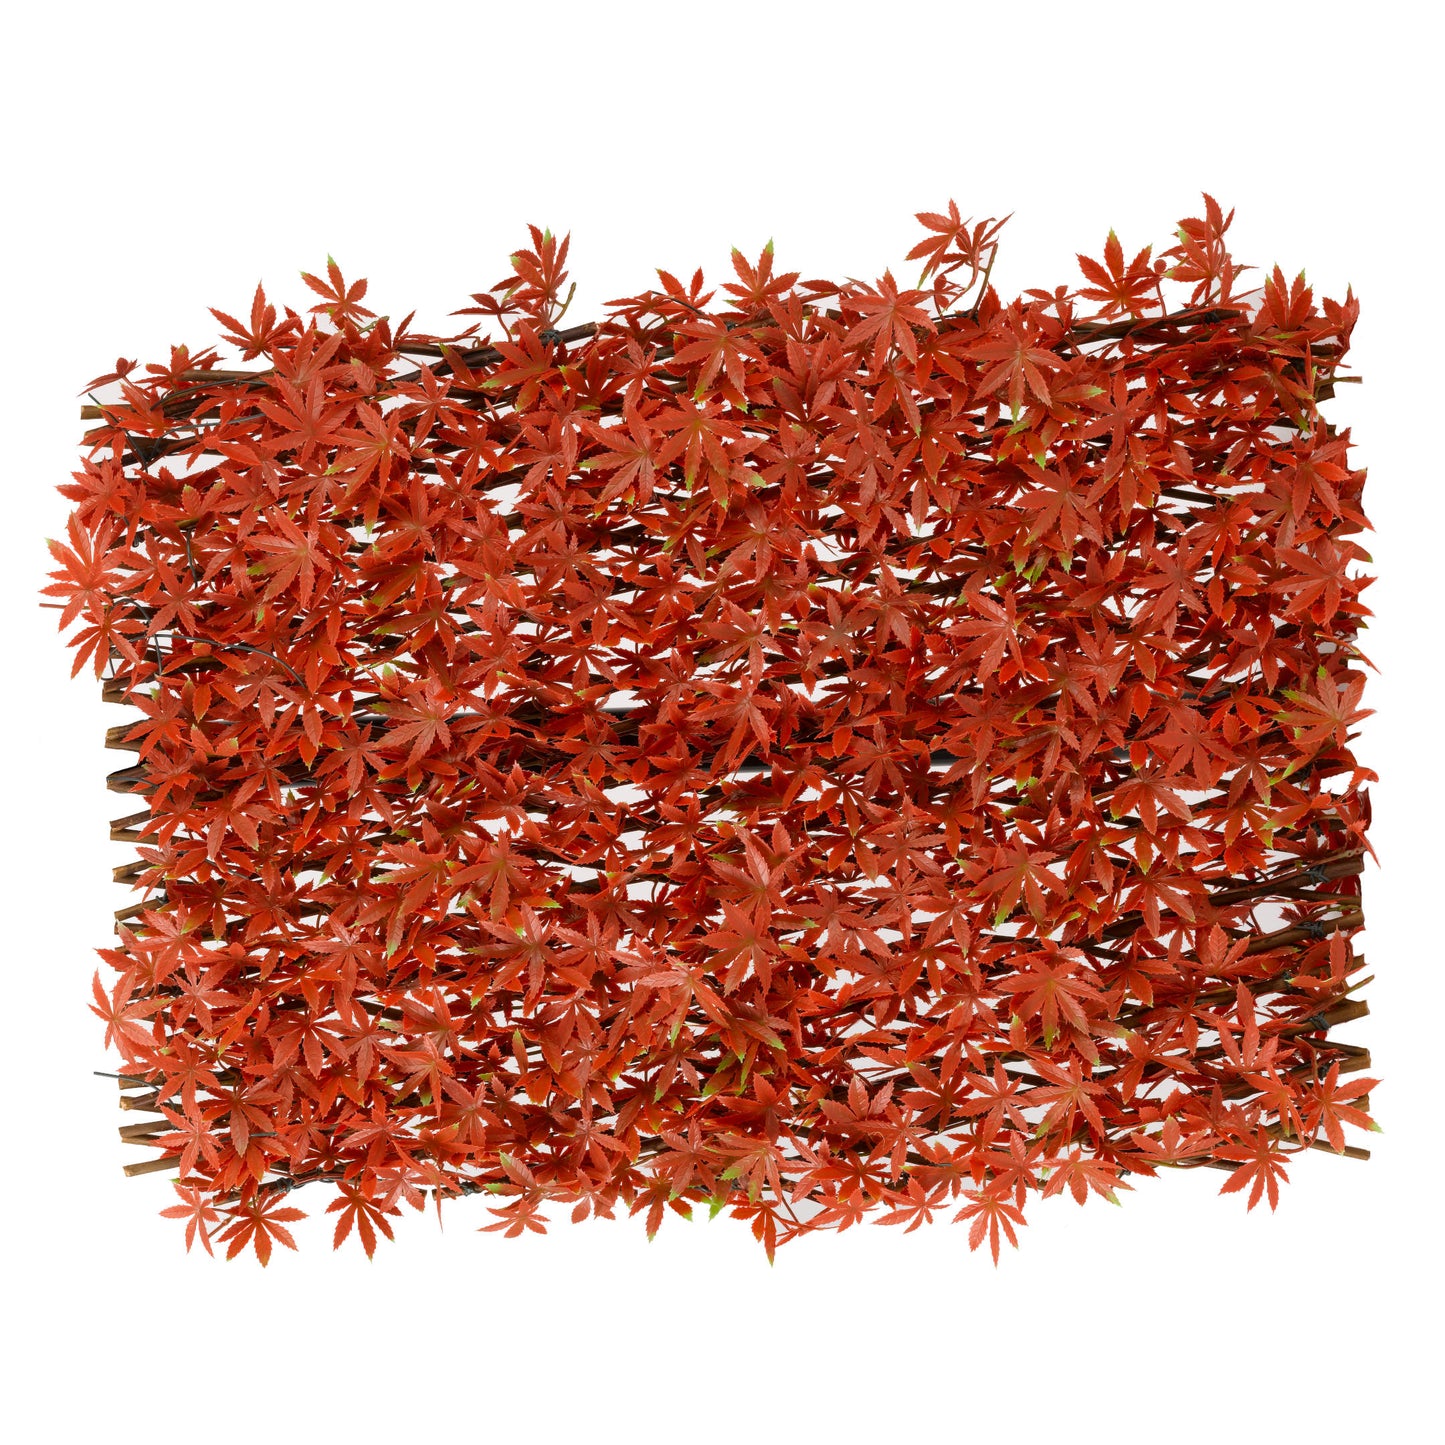 Red Acer Leaf Willow Trellis ⸱ dekoračná mreža z umelými listami červeného javora